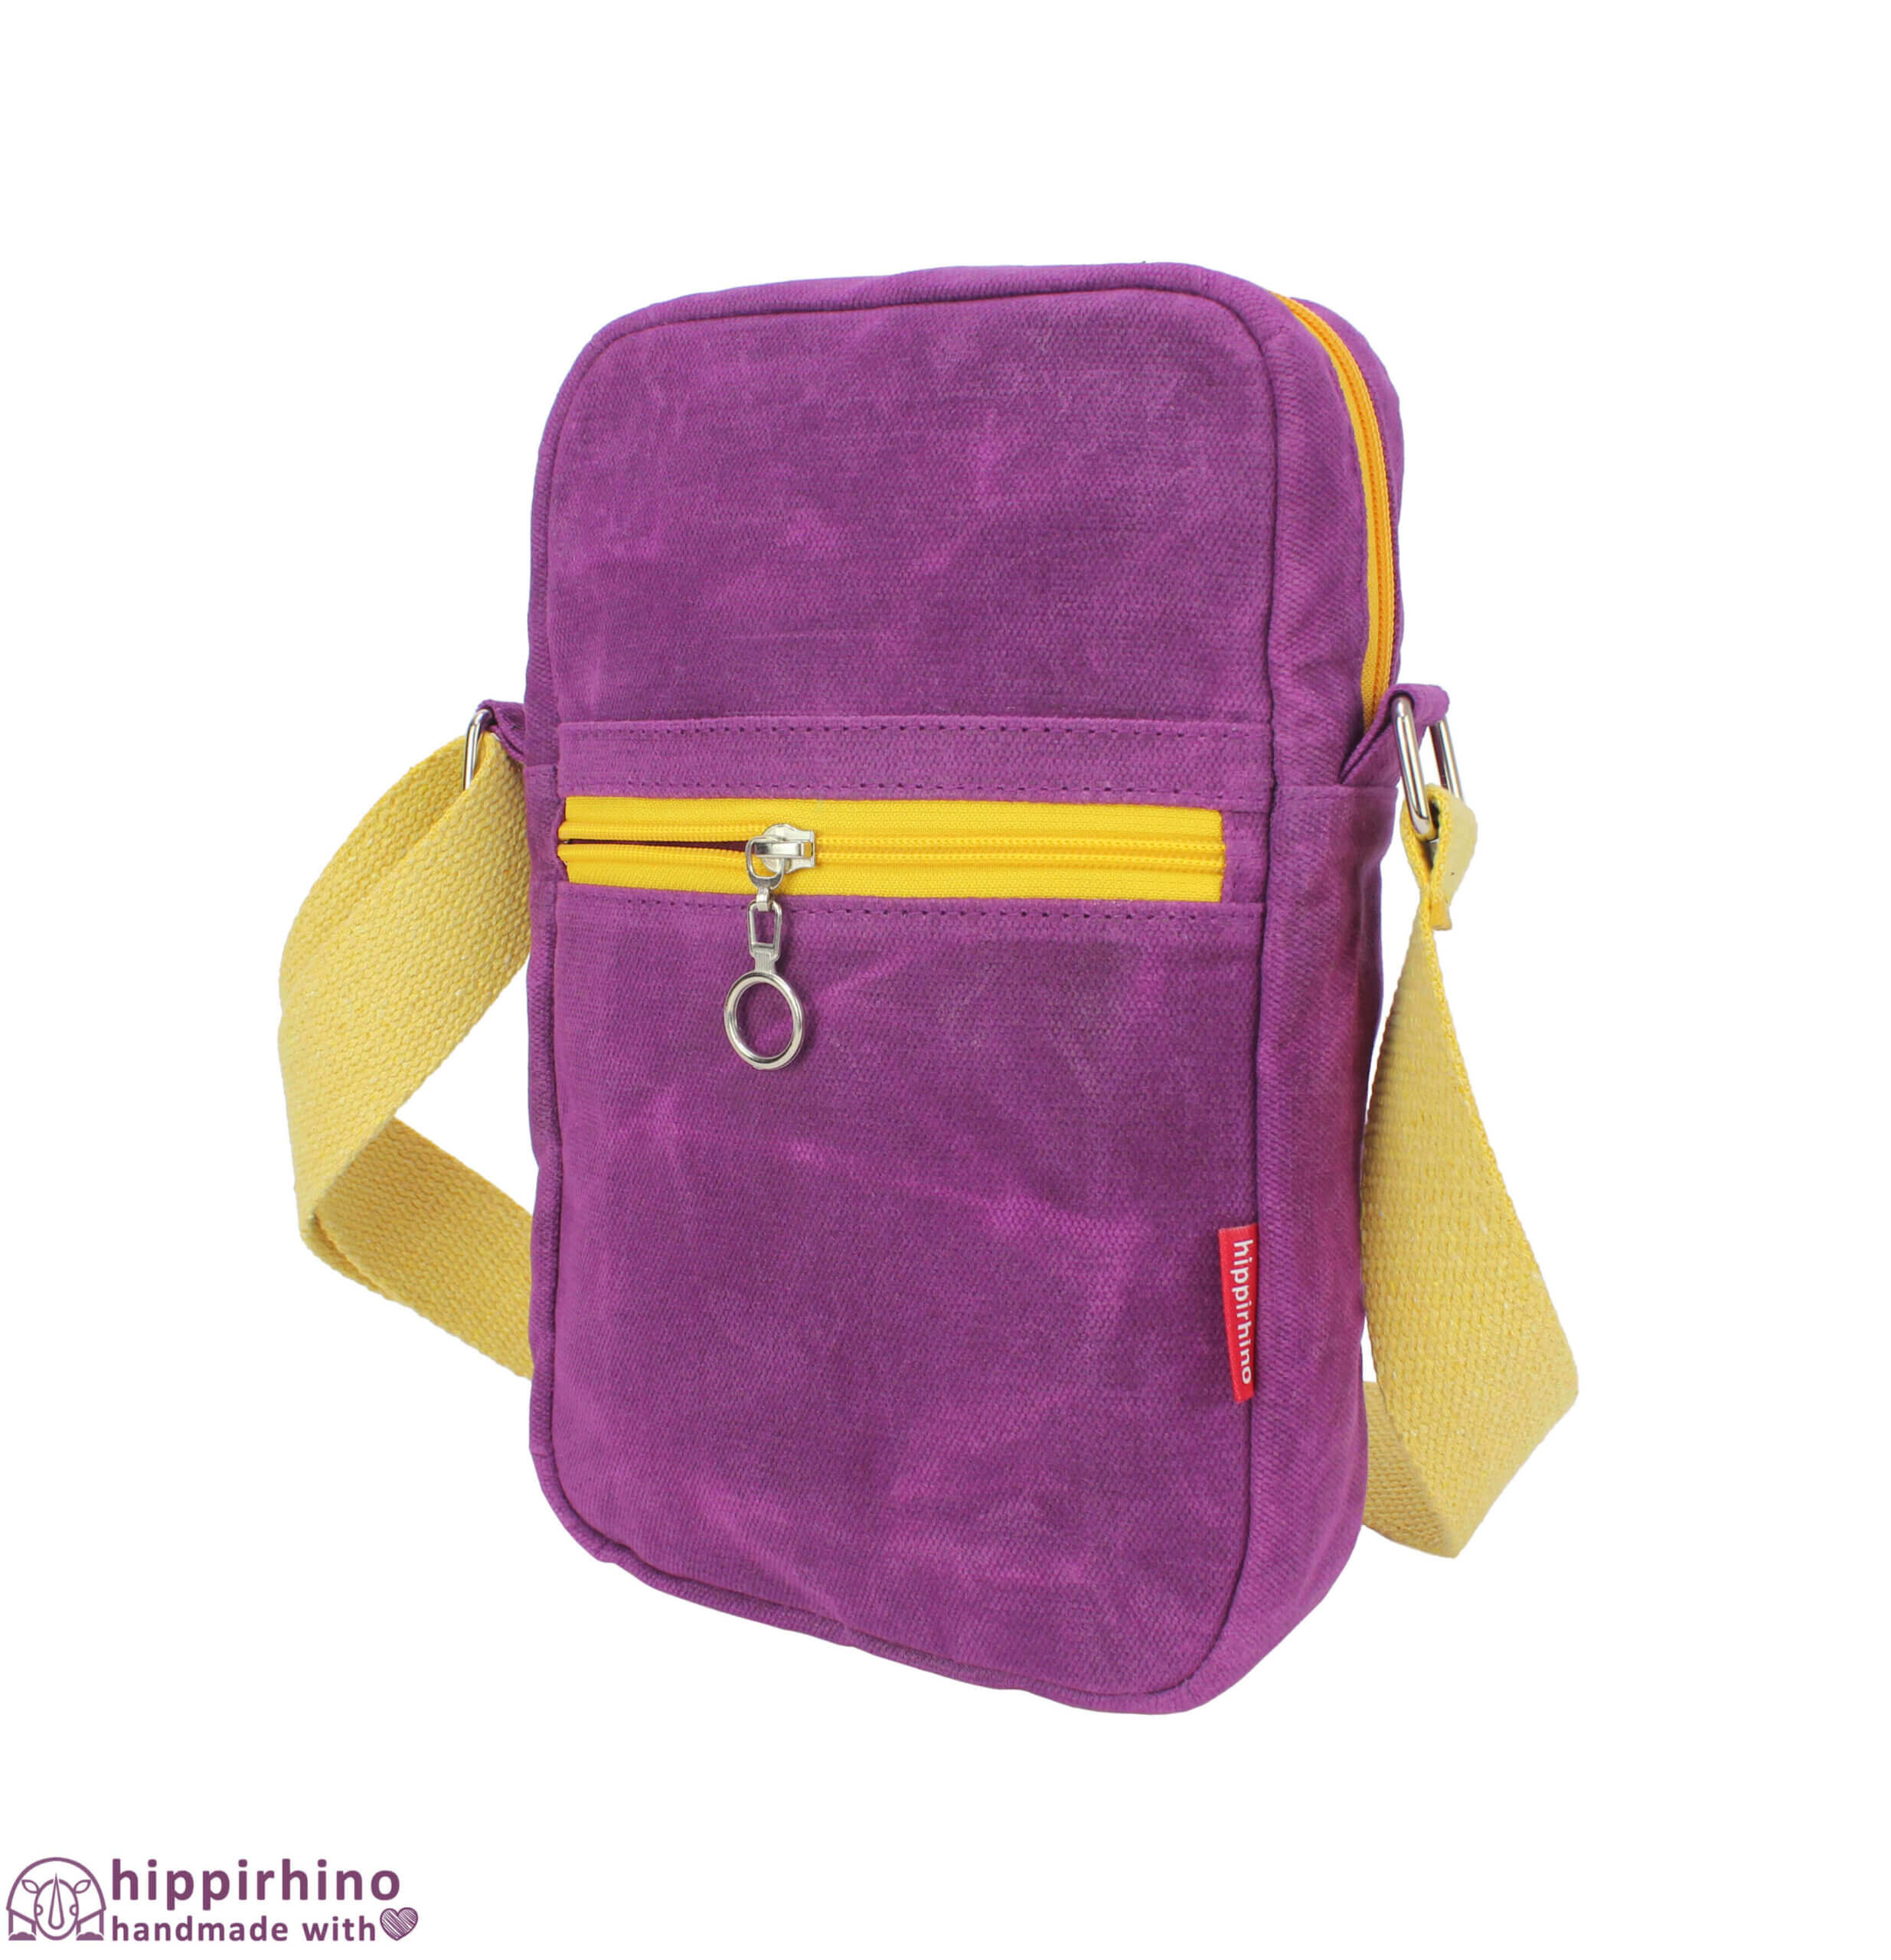 Cute Minion Cross Body Zipper Sling Bag Coin Purse at Rs 450.00 | क्रॉस  बॉडी बैग, कंधे पर आड़ा पहने जाने वाला बैग - Mango People Shop LLP, Noida |  ID: 2850536200091